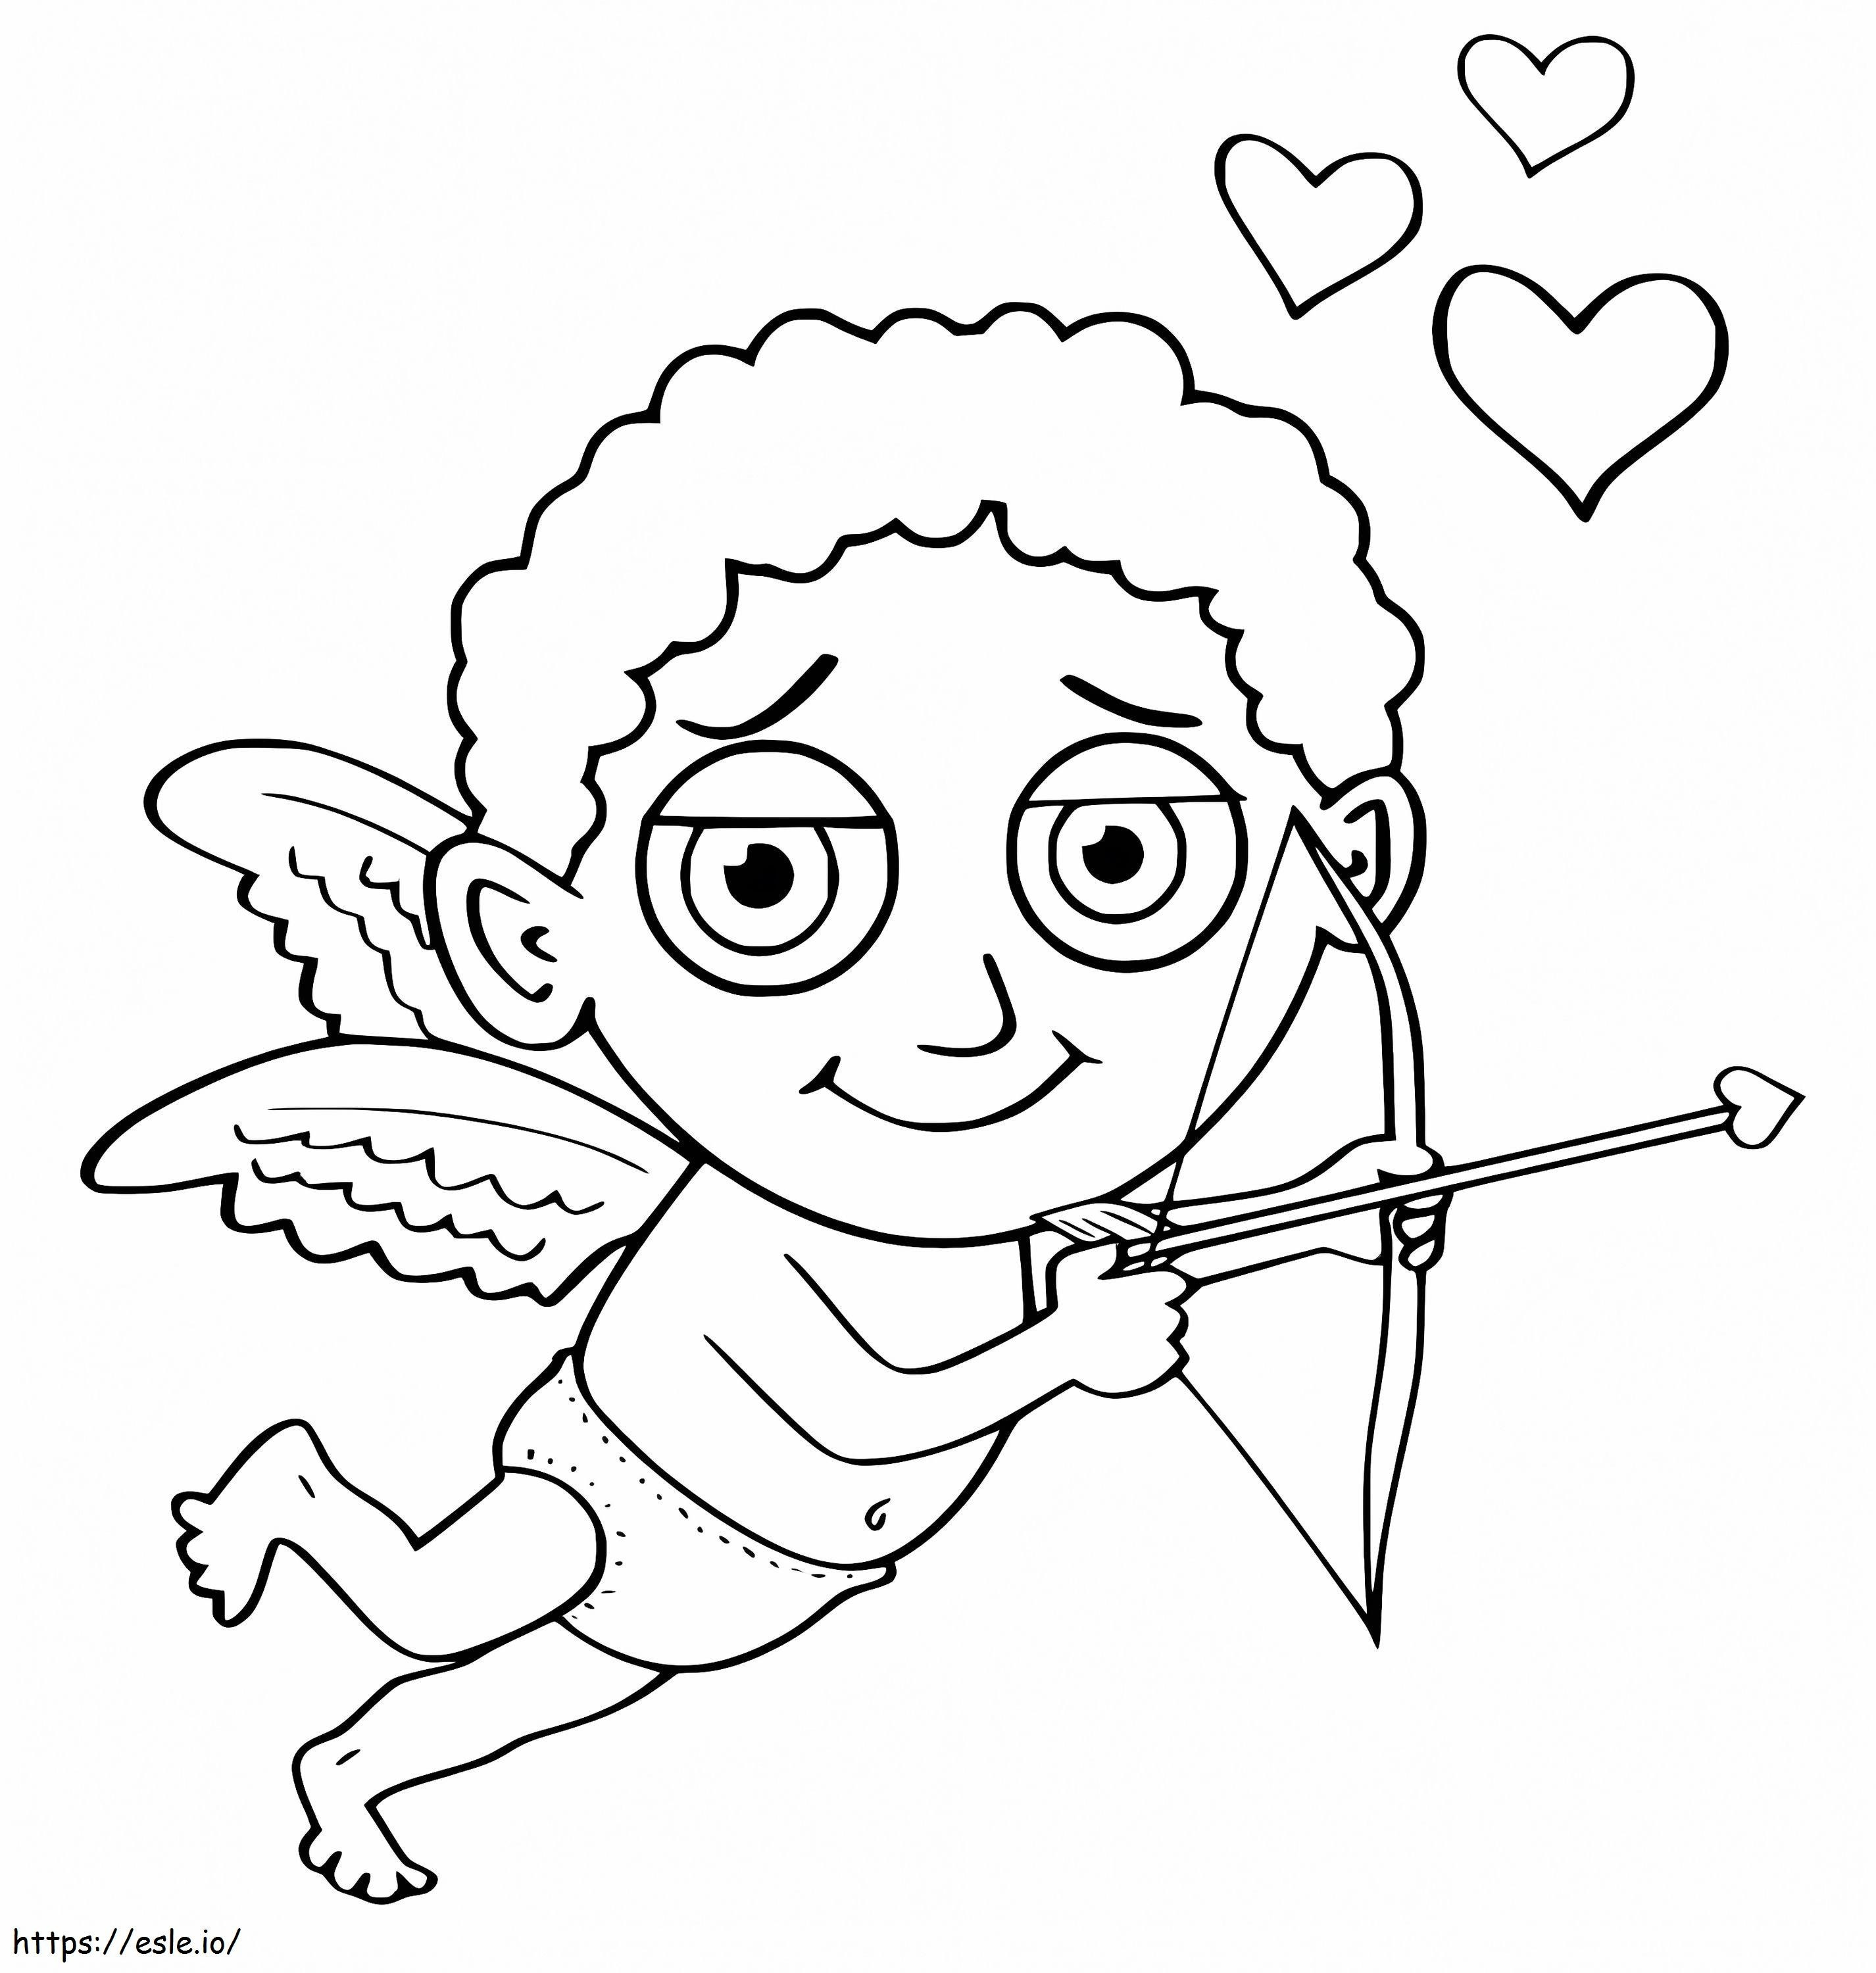 Boy Cupid coloring page